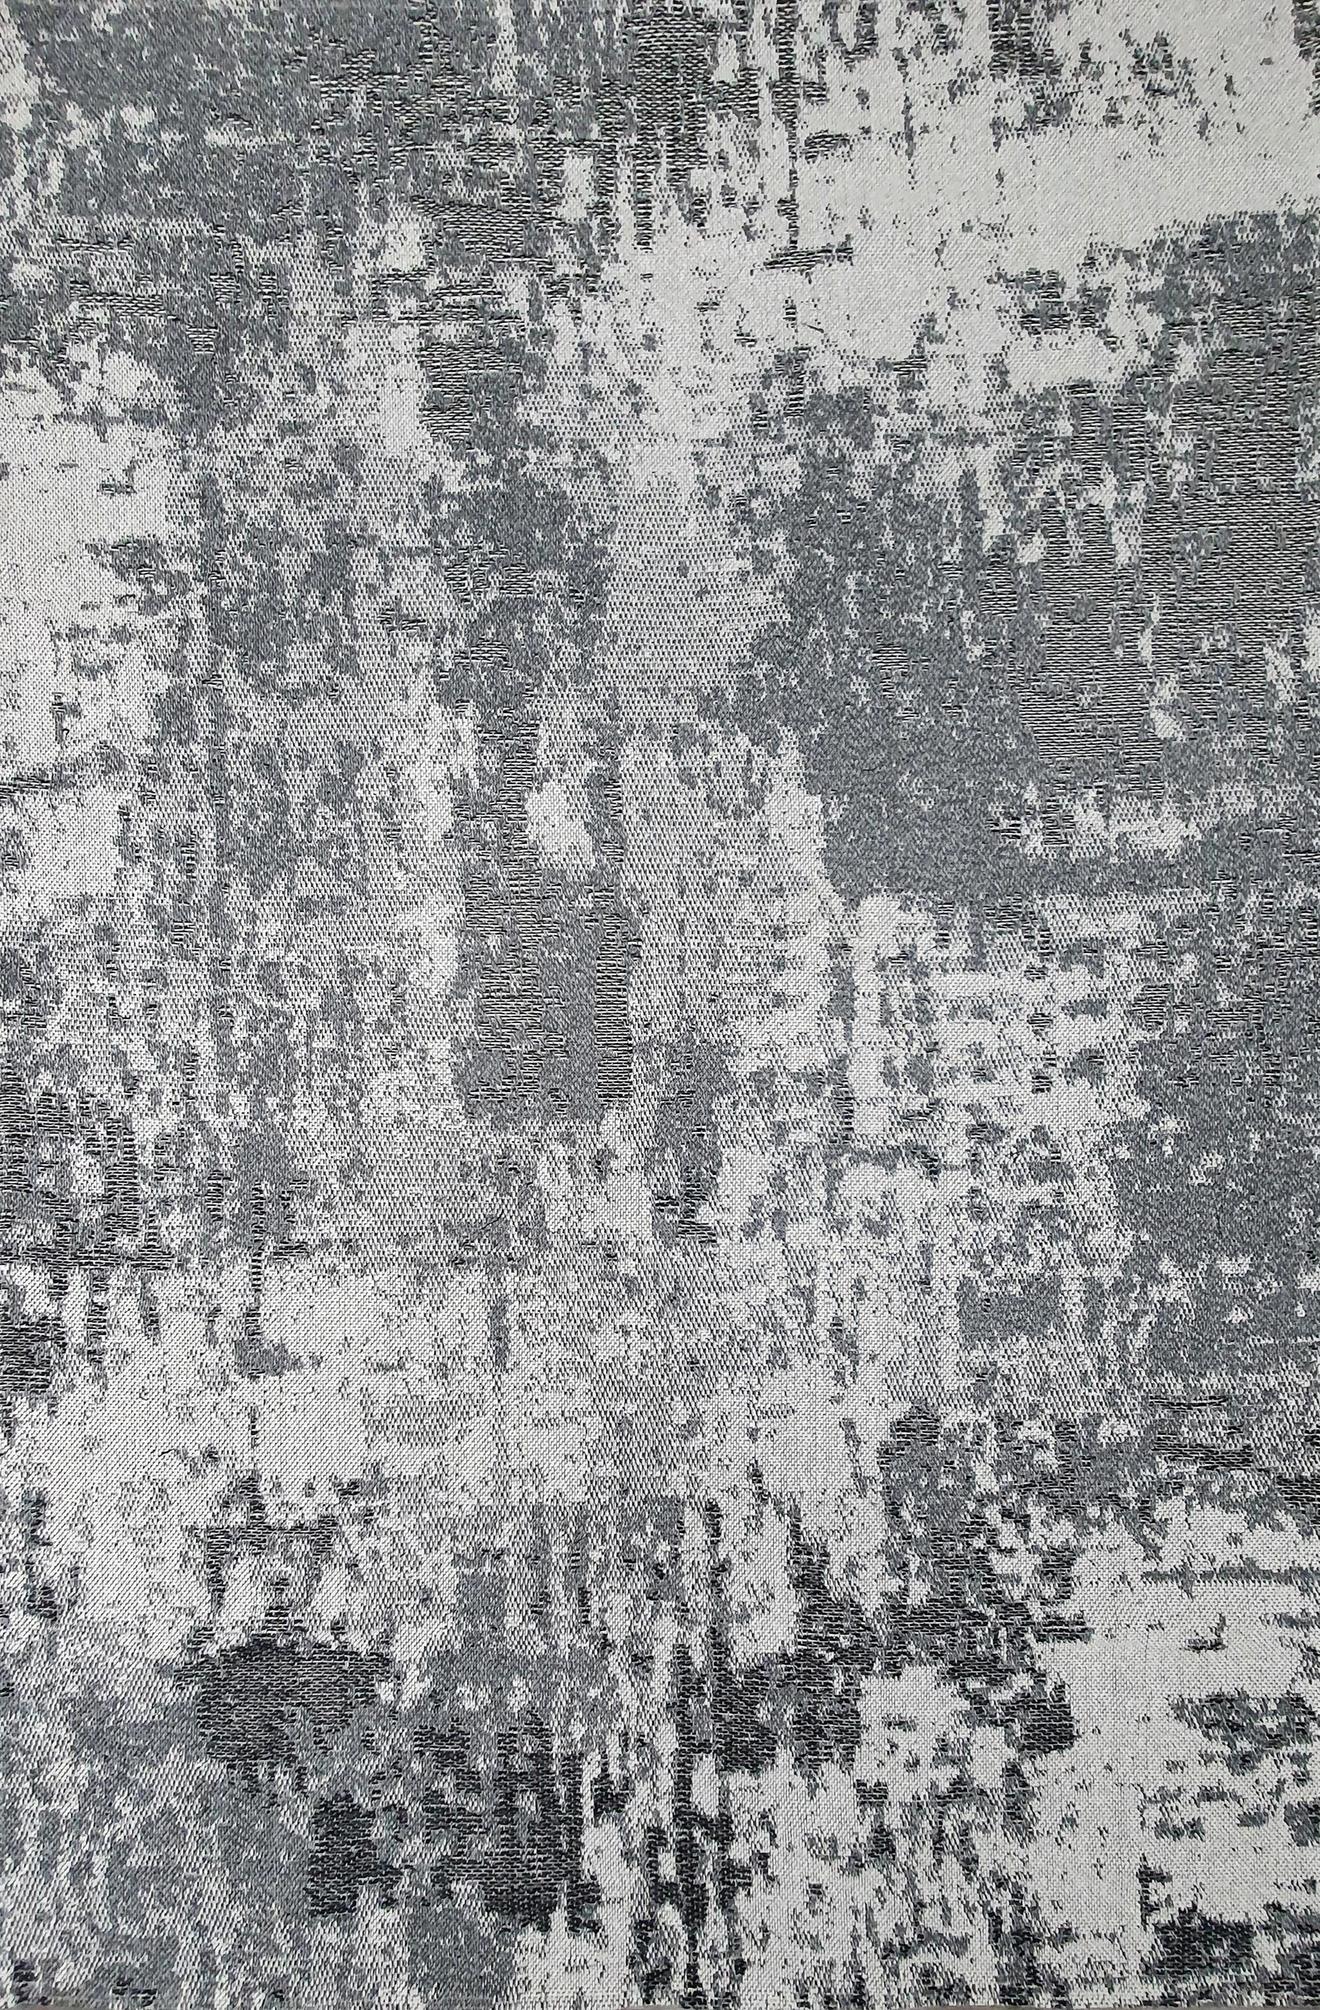 Antika matto 66x150 cm, harmaa tuote hintaan 15€ liikkeestä MASKU